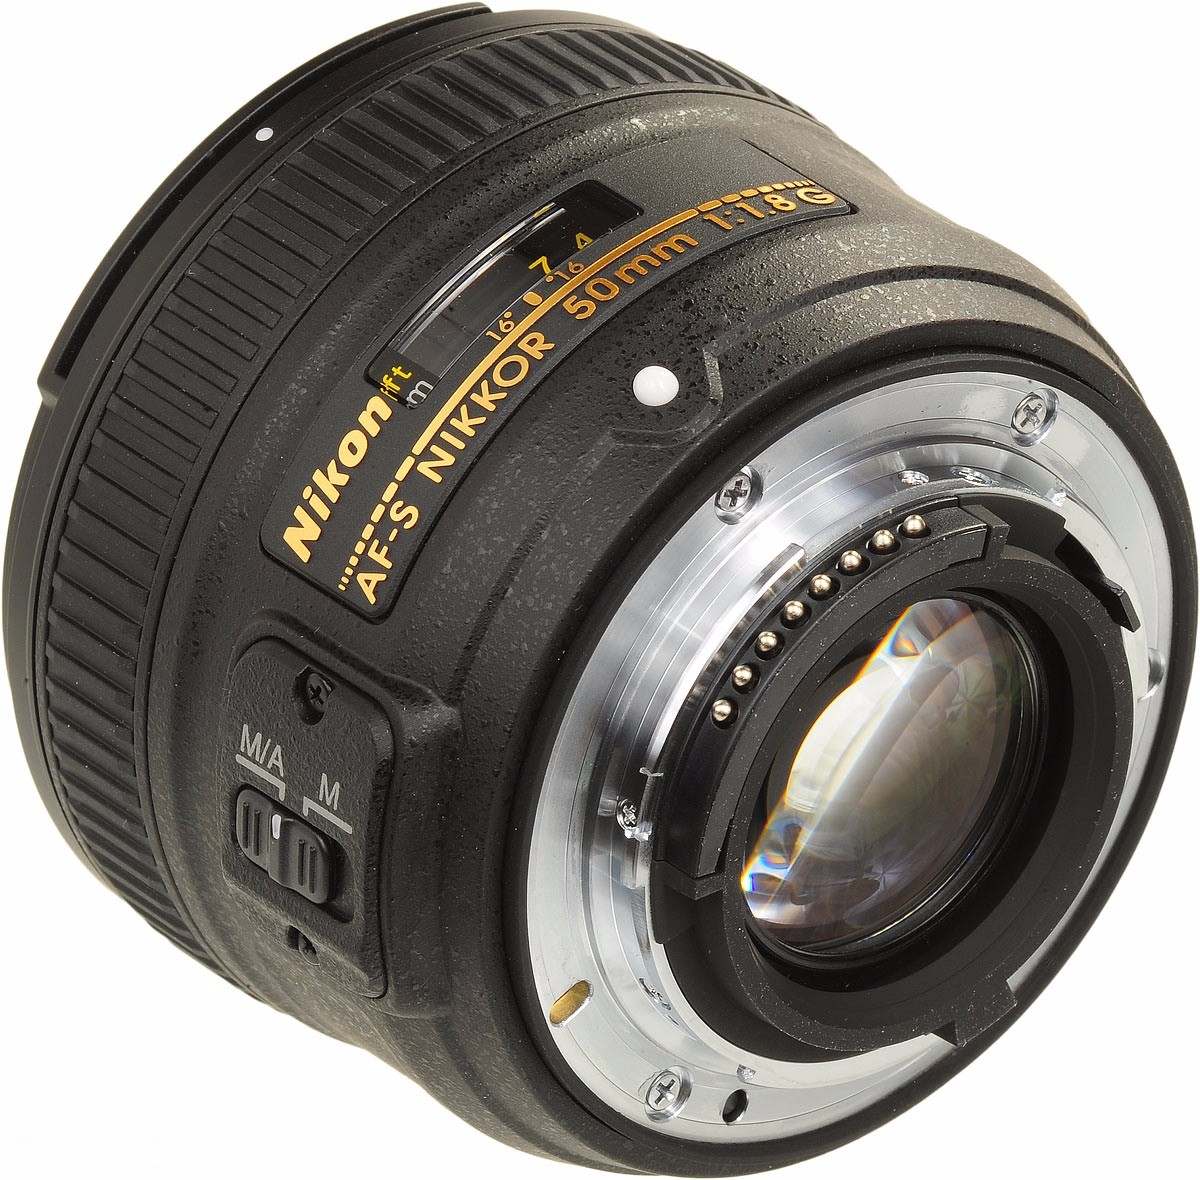 Lente Nikon Af-s Nikkor 50mm F/1.8g - Garantia E Nf - R$ 885,99 em